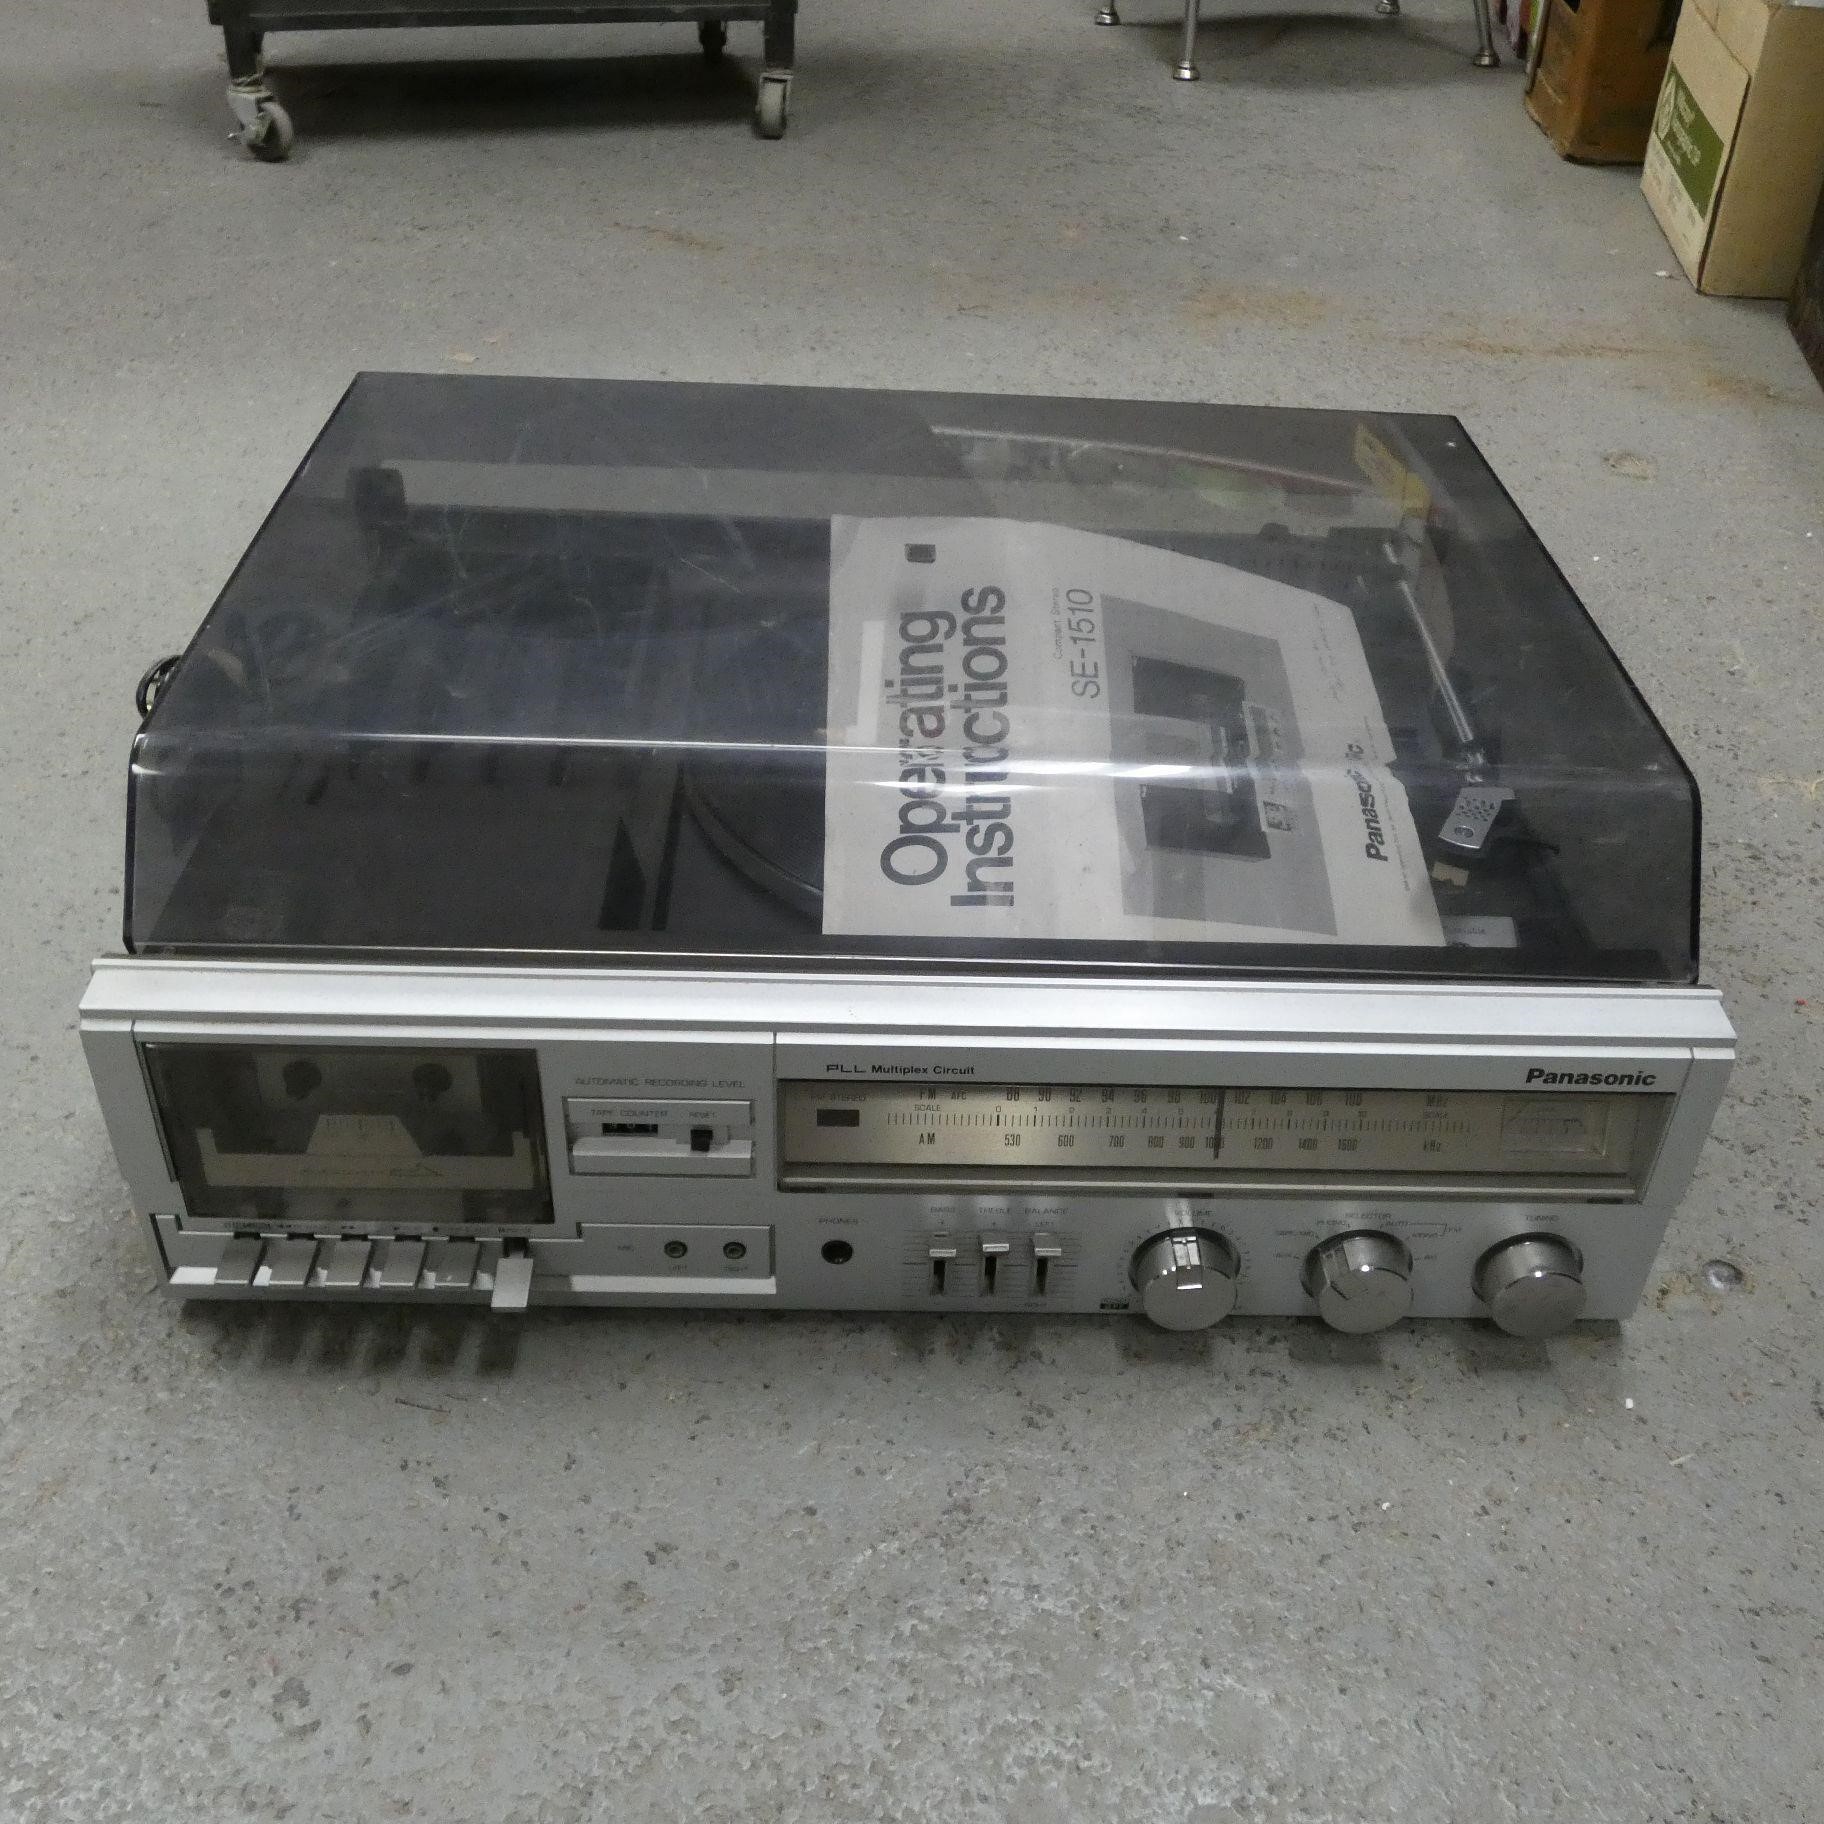 Panasonic SE-1510 Compact Stereo Turntable